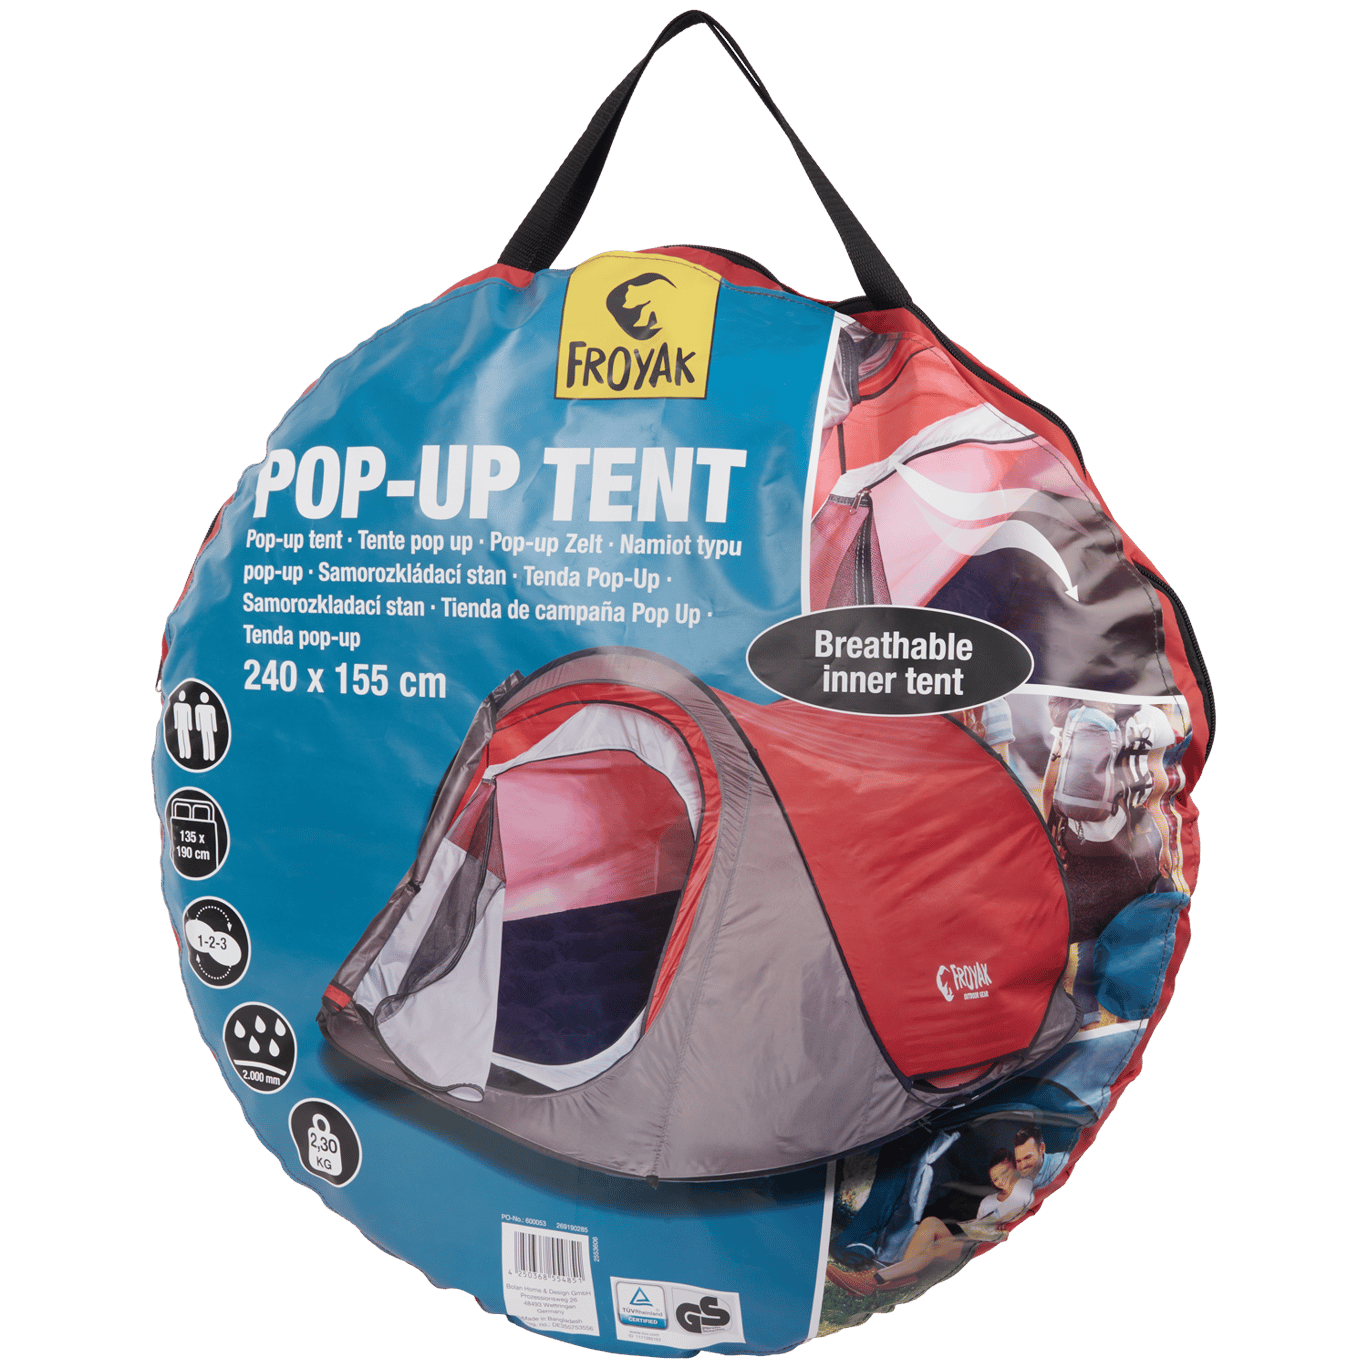 Rode datum beneden Tulpen Froyak pop-up tent | Action.com